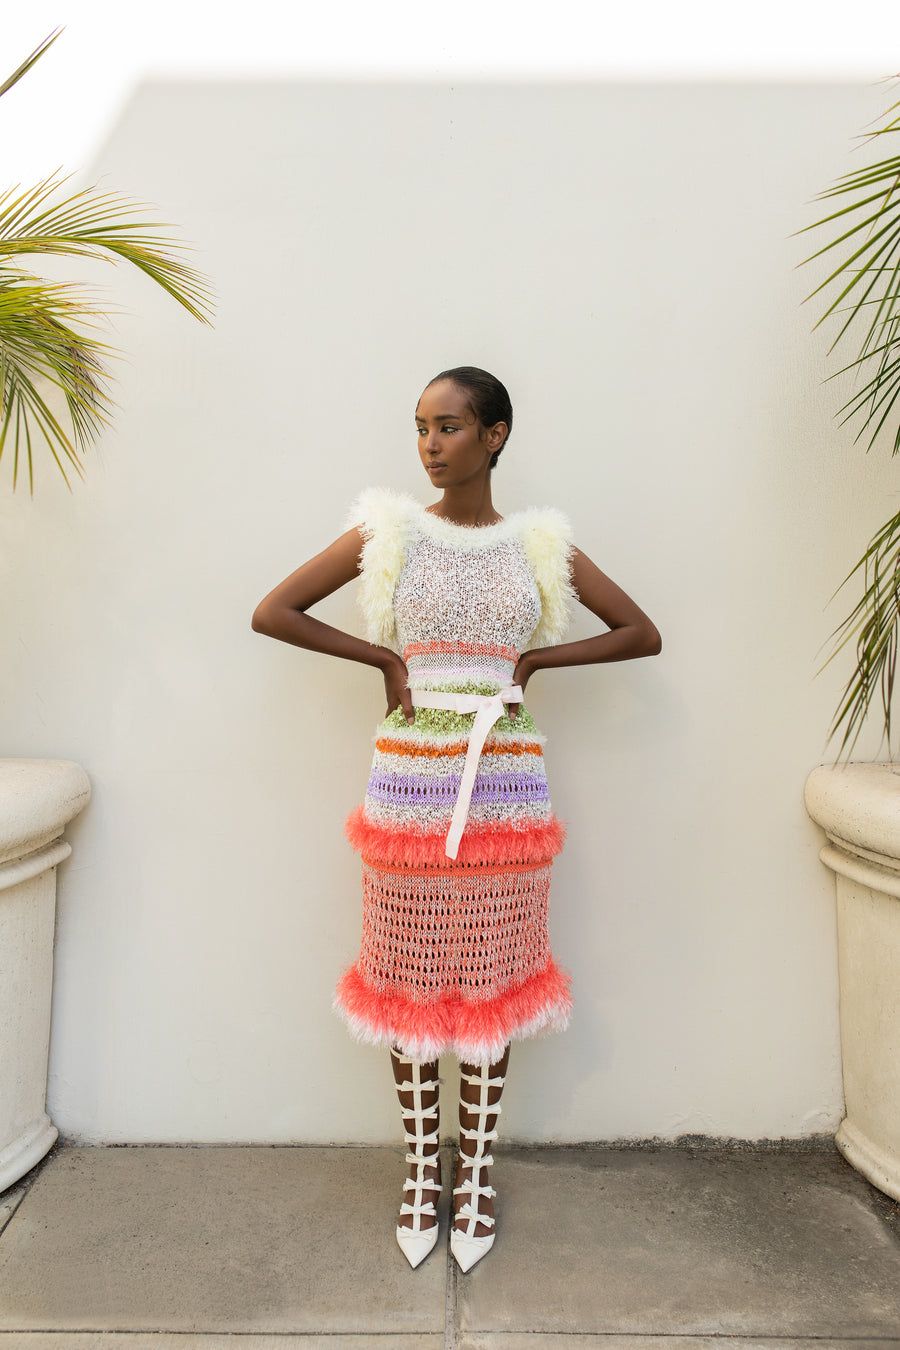 andreeva multicolor handmade knit dress